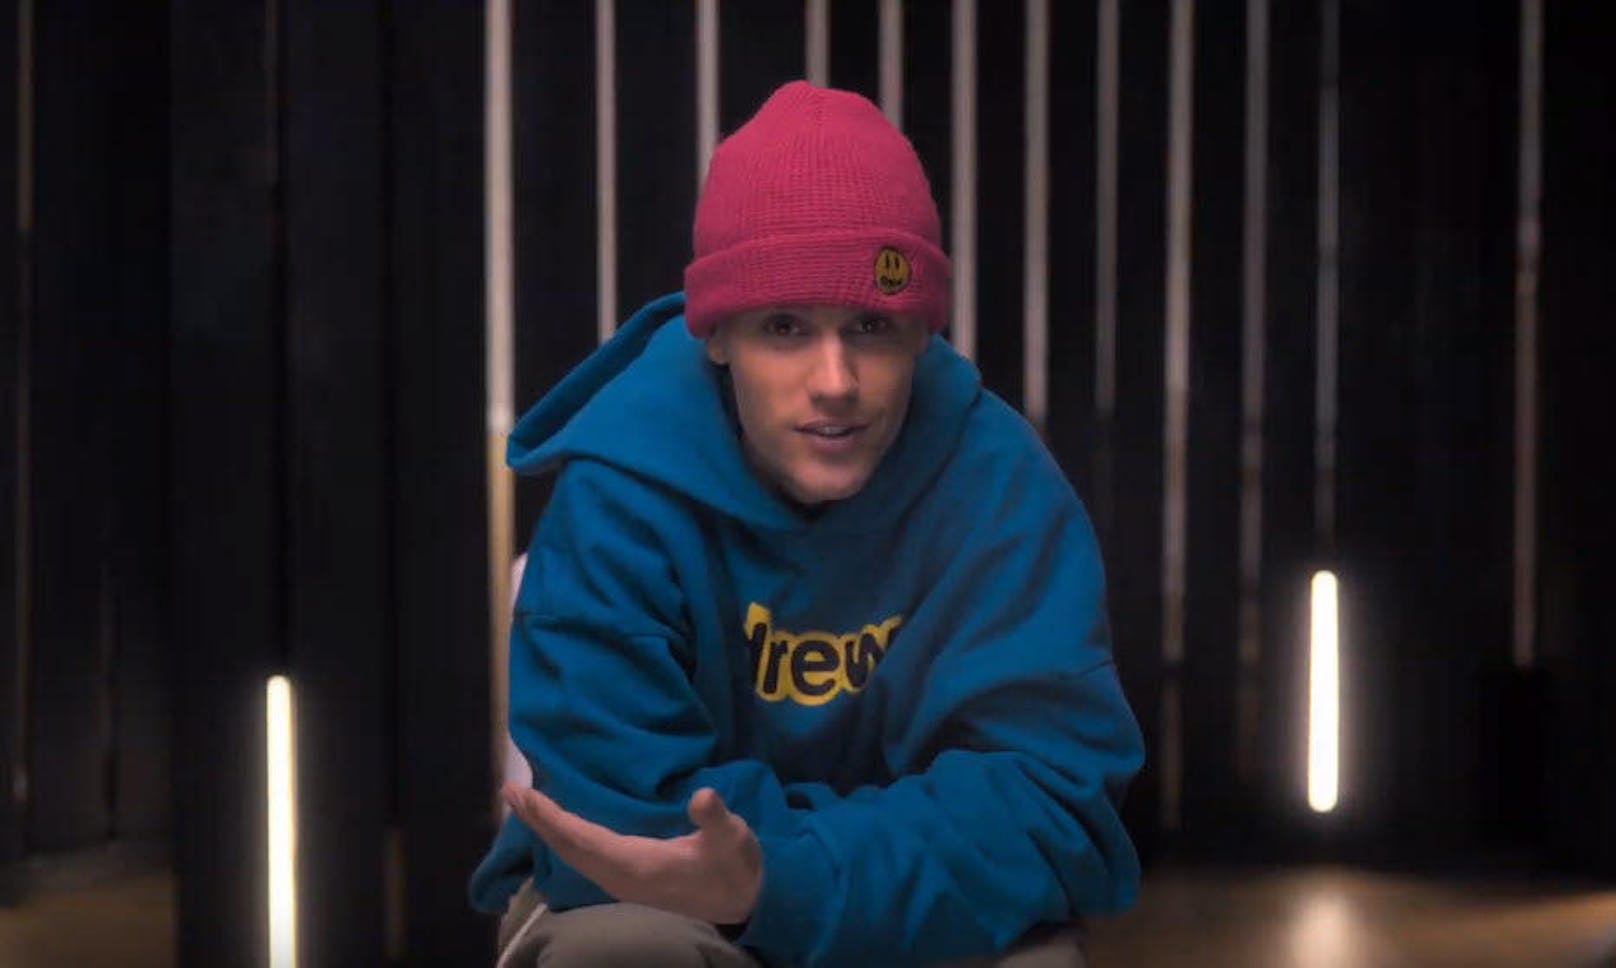 <i>"Hallo, ich bin Justin. Ich mache Musik."</i> Mit diesen Worten nimmt <b>Justin Bieber</b> seine Fans mit auf die Doku-Reise.